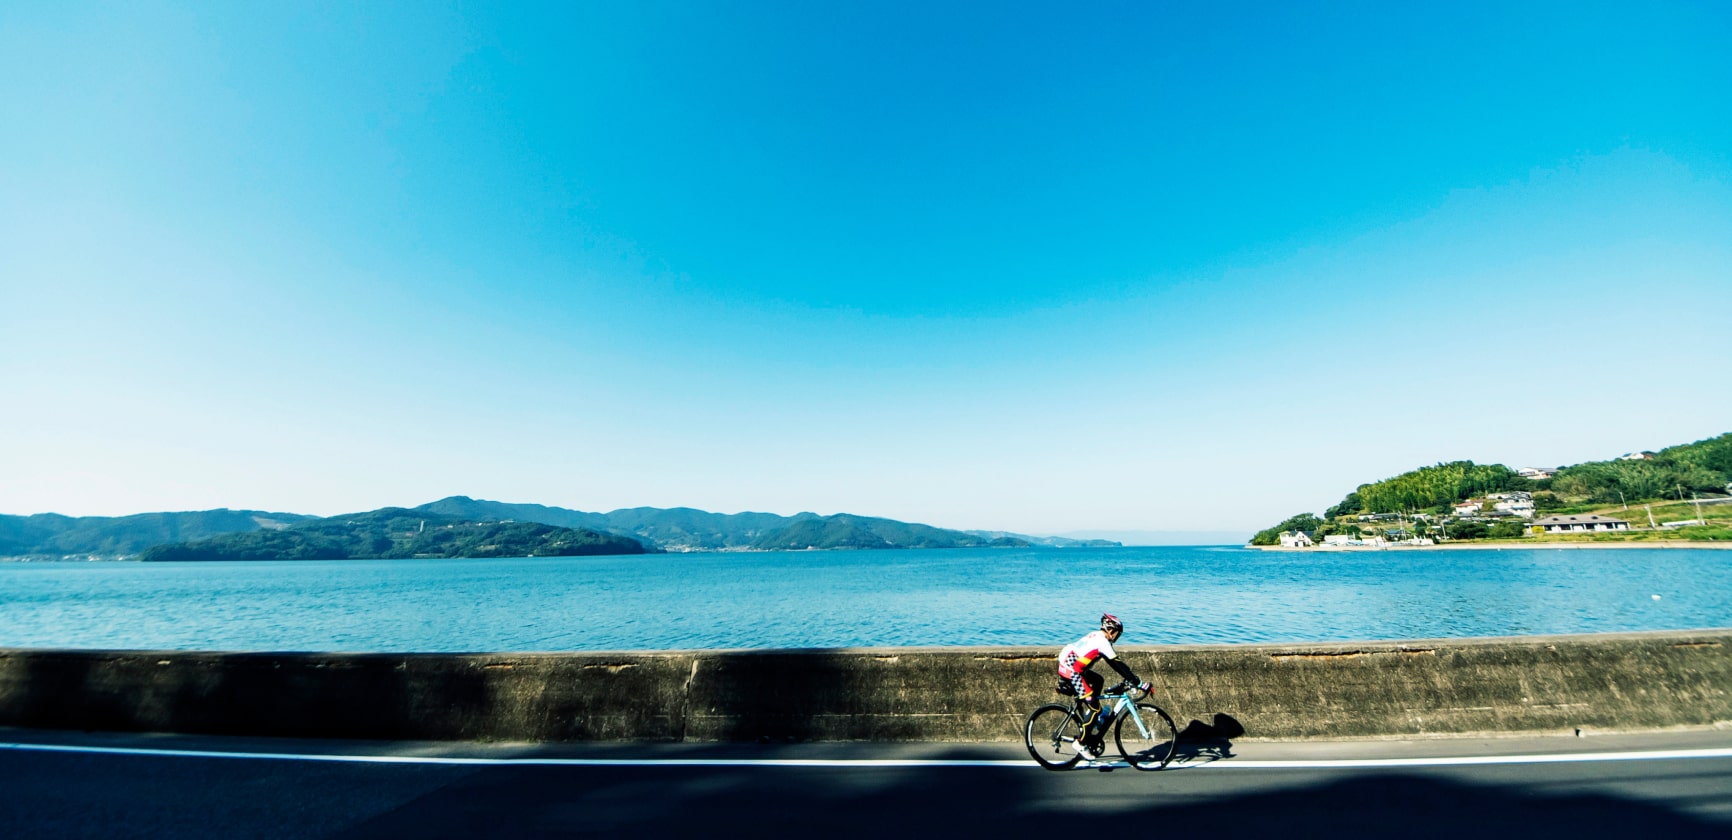 大村湾をのぞみサイクリングをする男性の写真